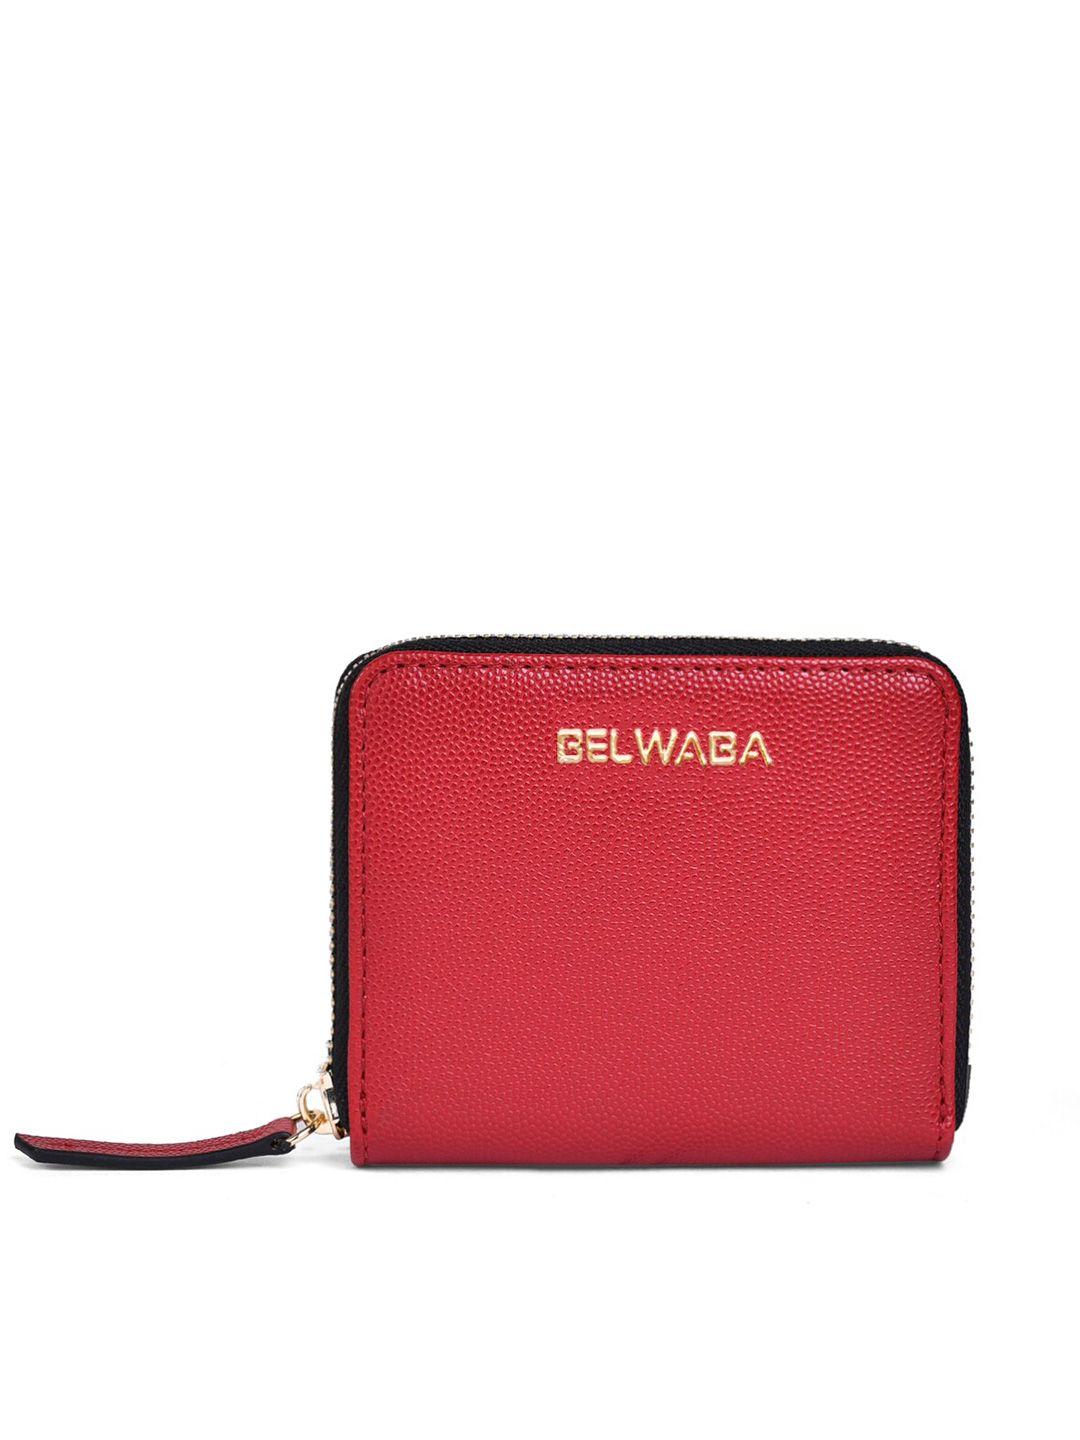 belwaba women red & gold-toned textured pu zip around wallet